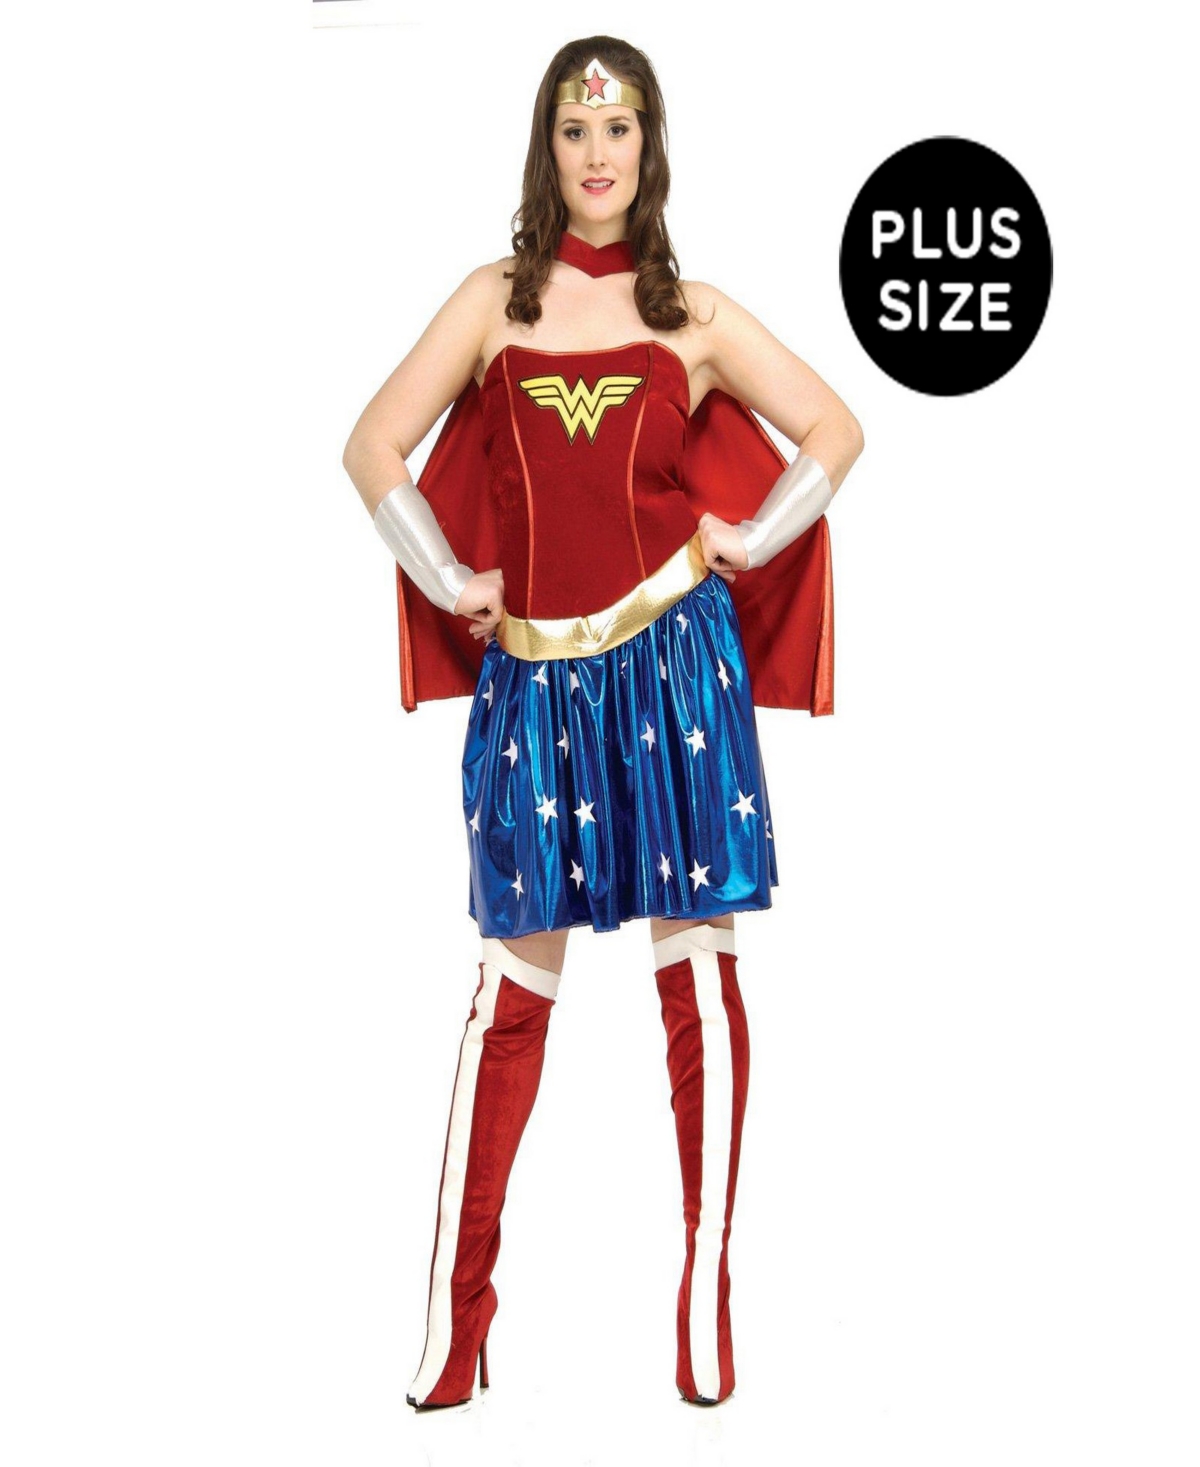 Buy Seasons Women's Wonder Woman Plus Costume - Red